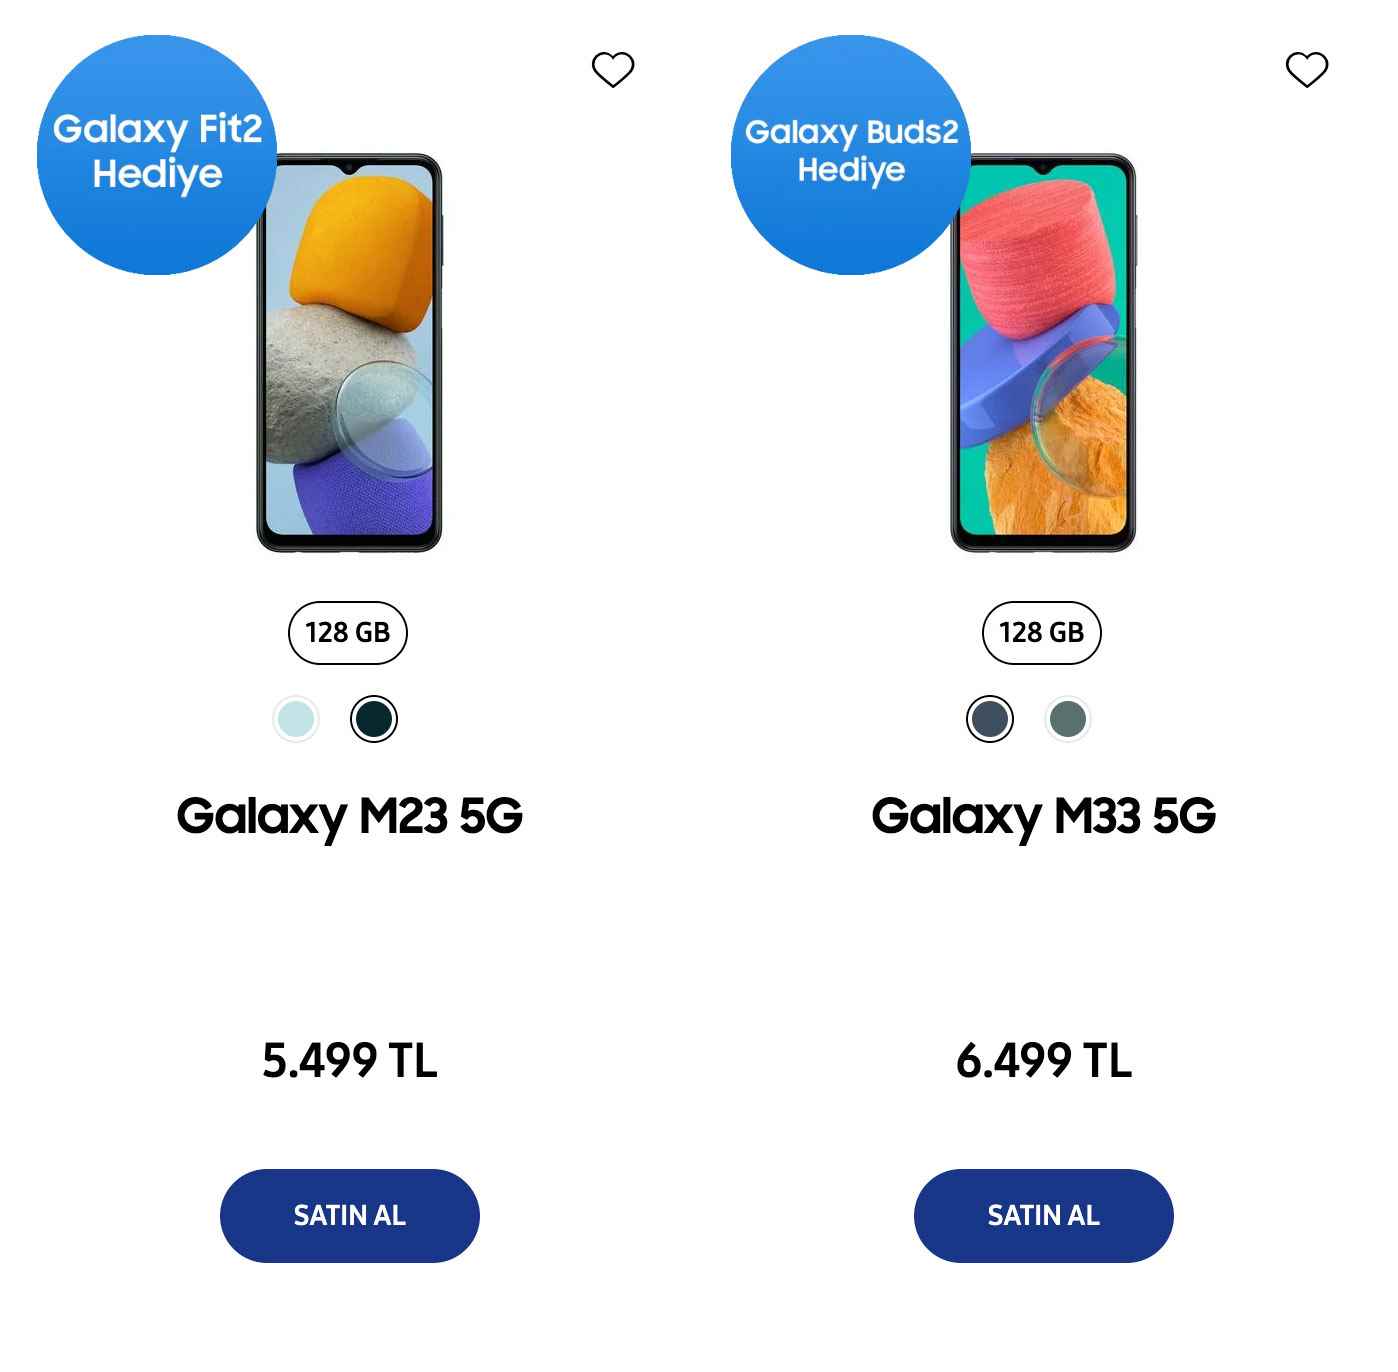 Samsung Galaxy M33 5G and Galaxy M23 5G on sale